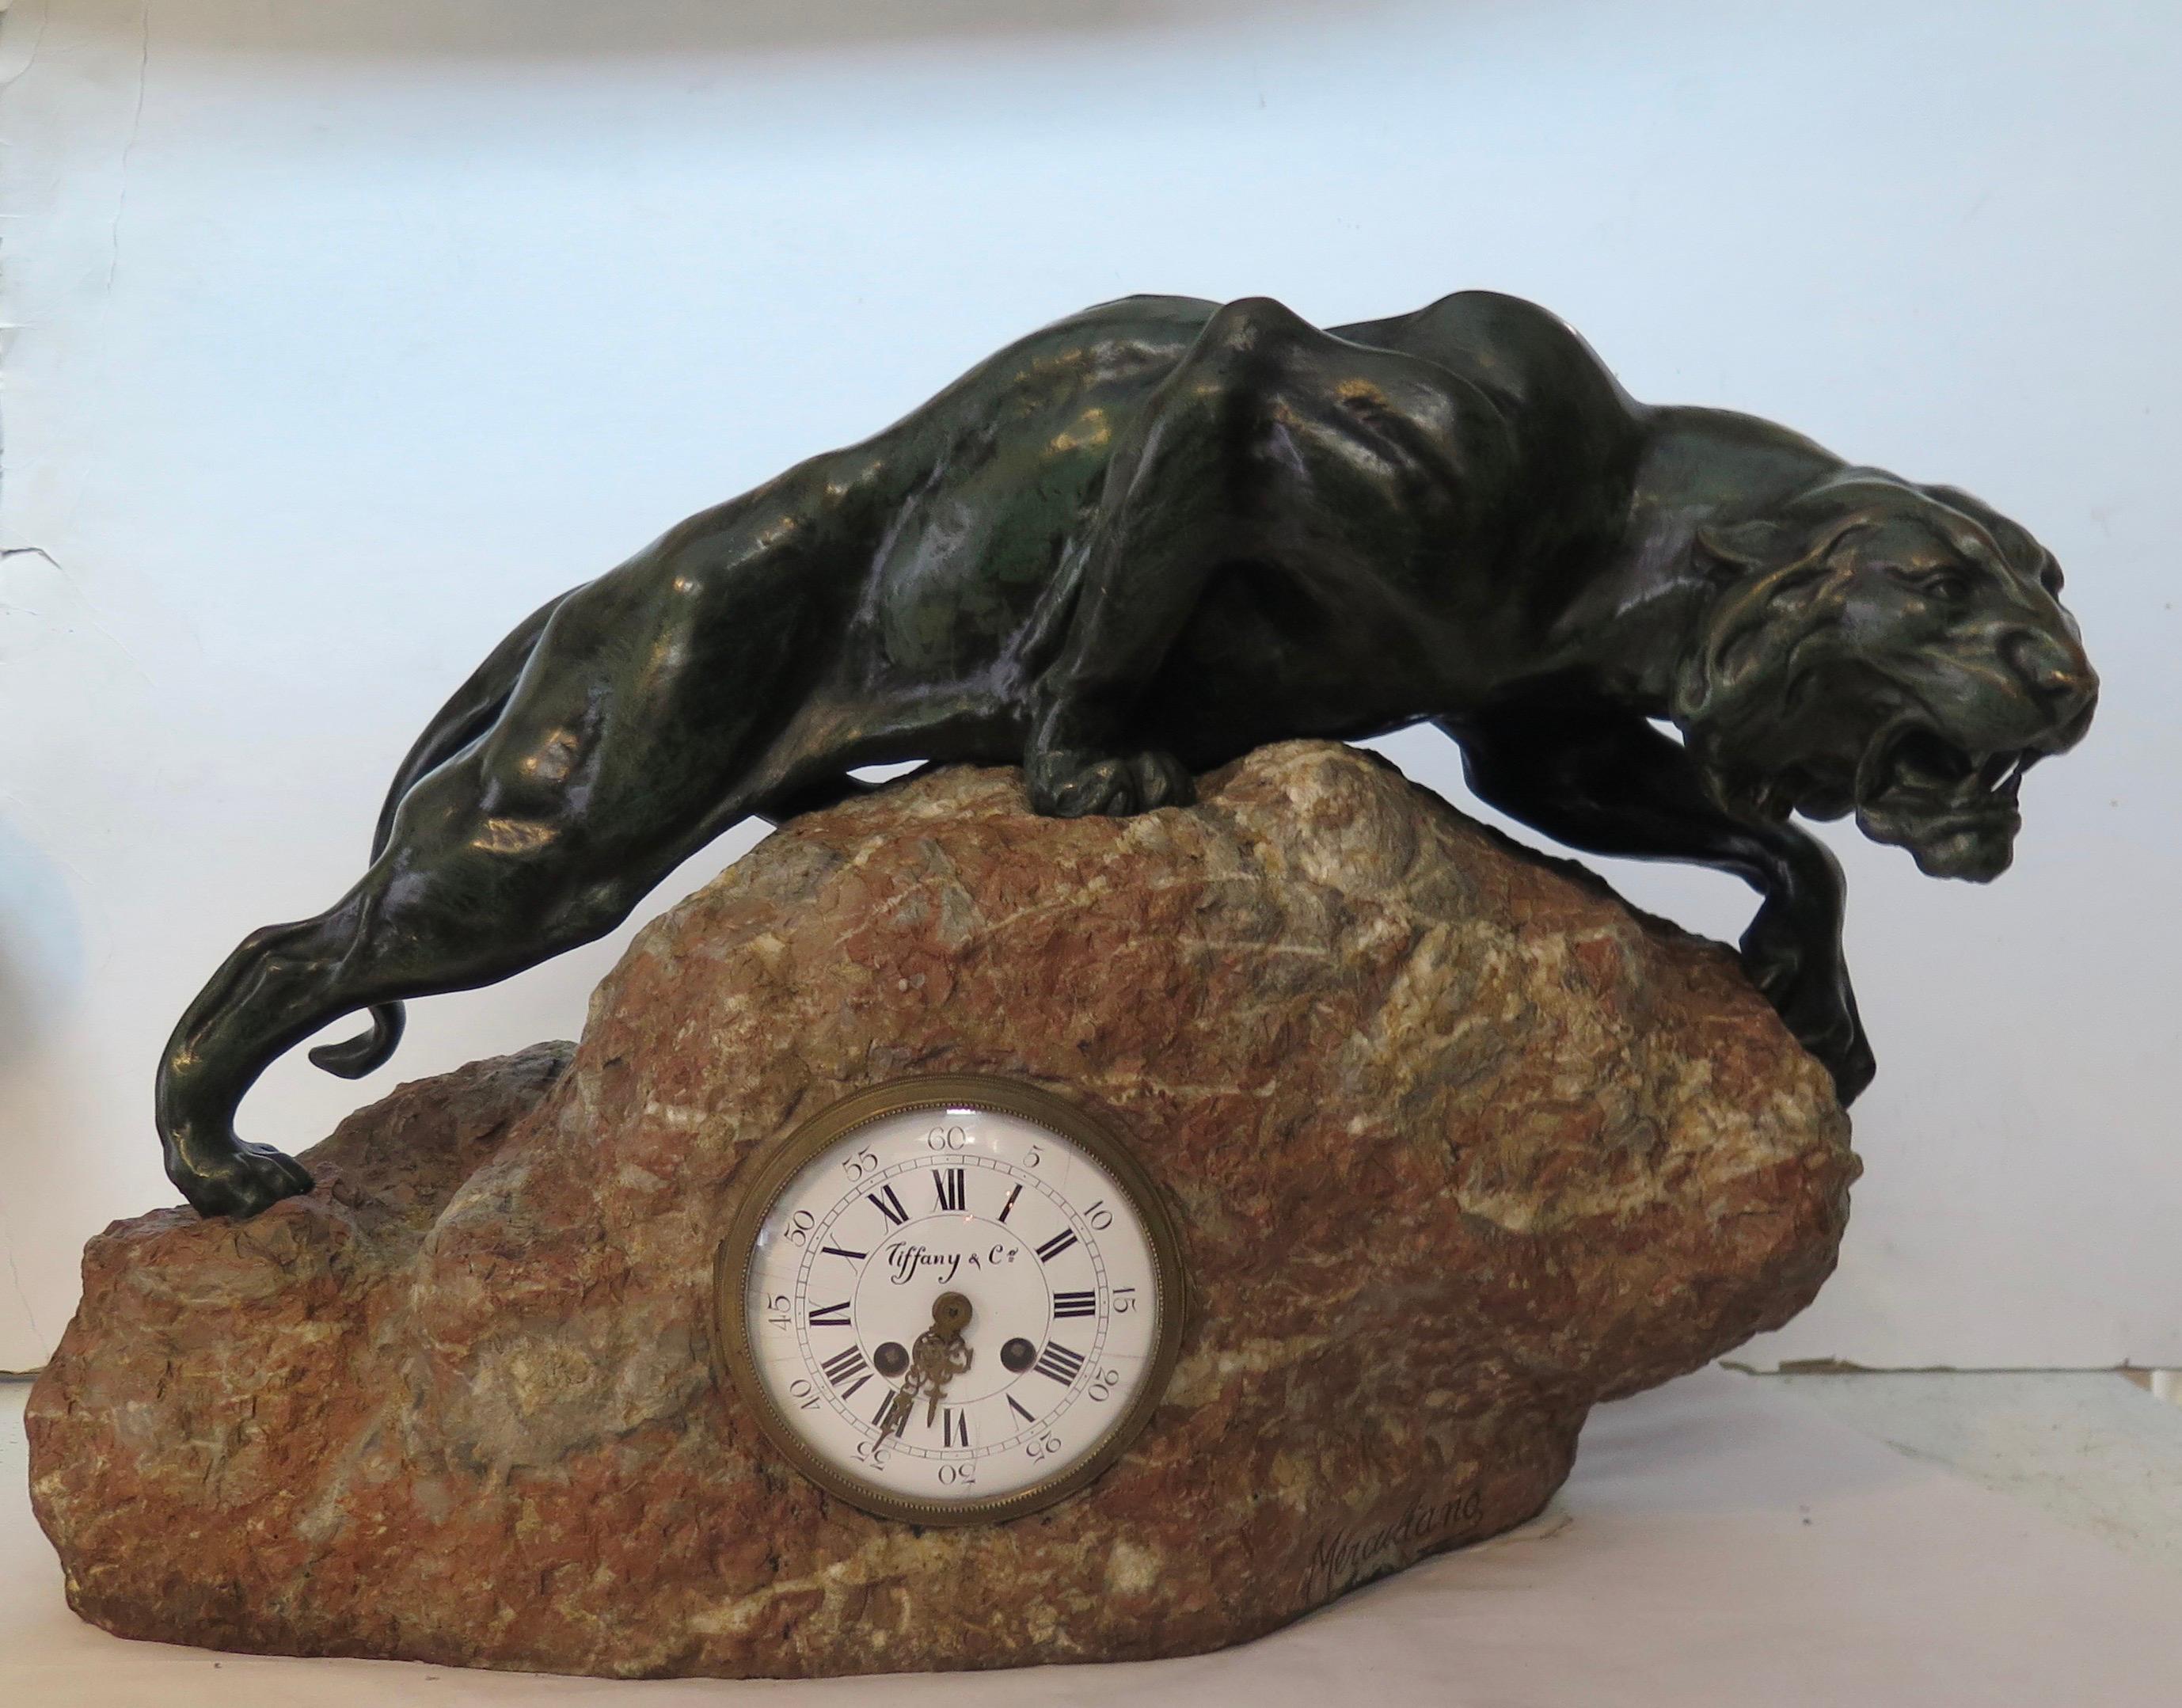 Dieser Jahrgang Majestic Bronze Tier-Skulptur & Uhr aus den frühen 1900er Jahren. Die Skulptur wurde vom Künstler MERCULIANO geschaffen und signiert. Die atemberaubende patinierte dunkelgrüne Bronzeskulptur eines Berglöwen hat einen wunderschön und